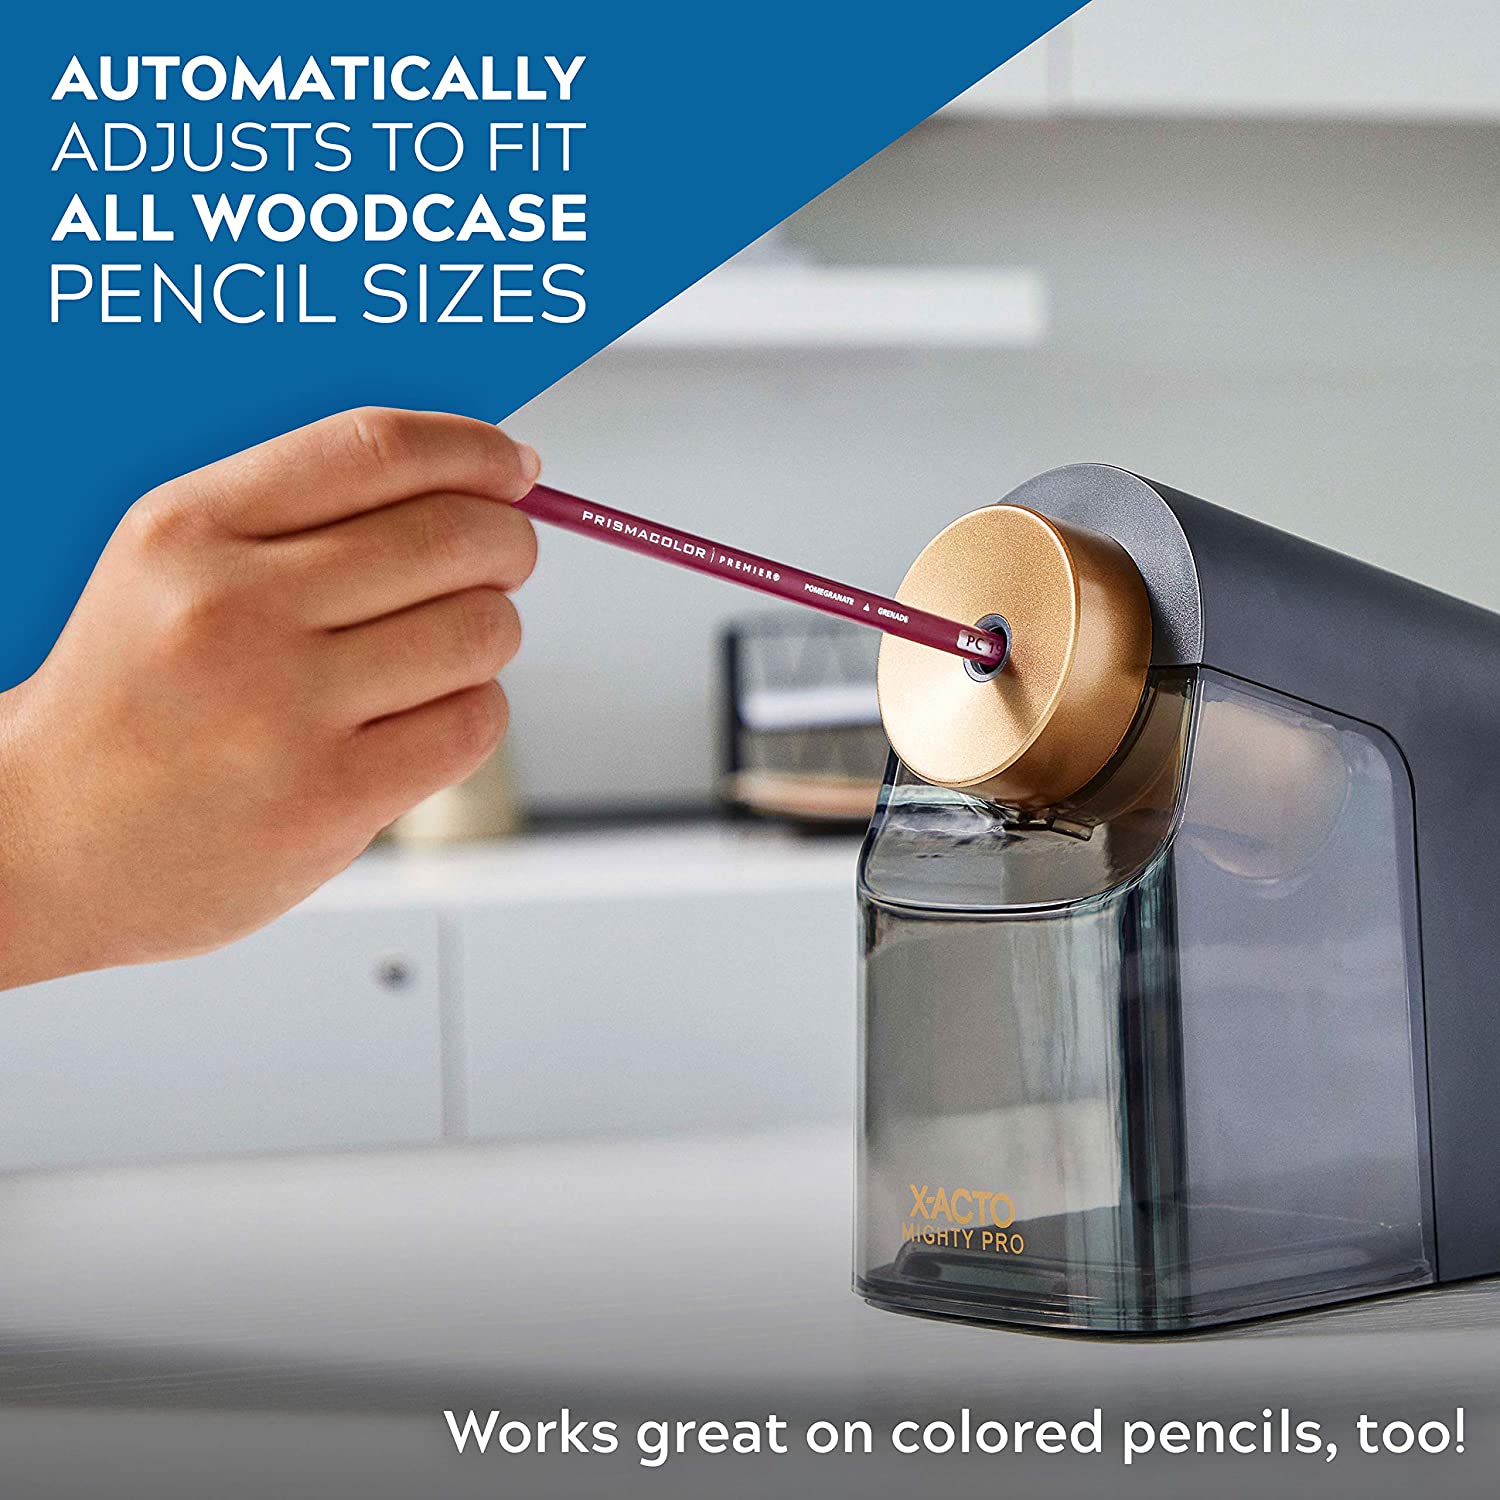 X-ACTO Pencil Sharpener feature 3